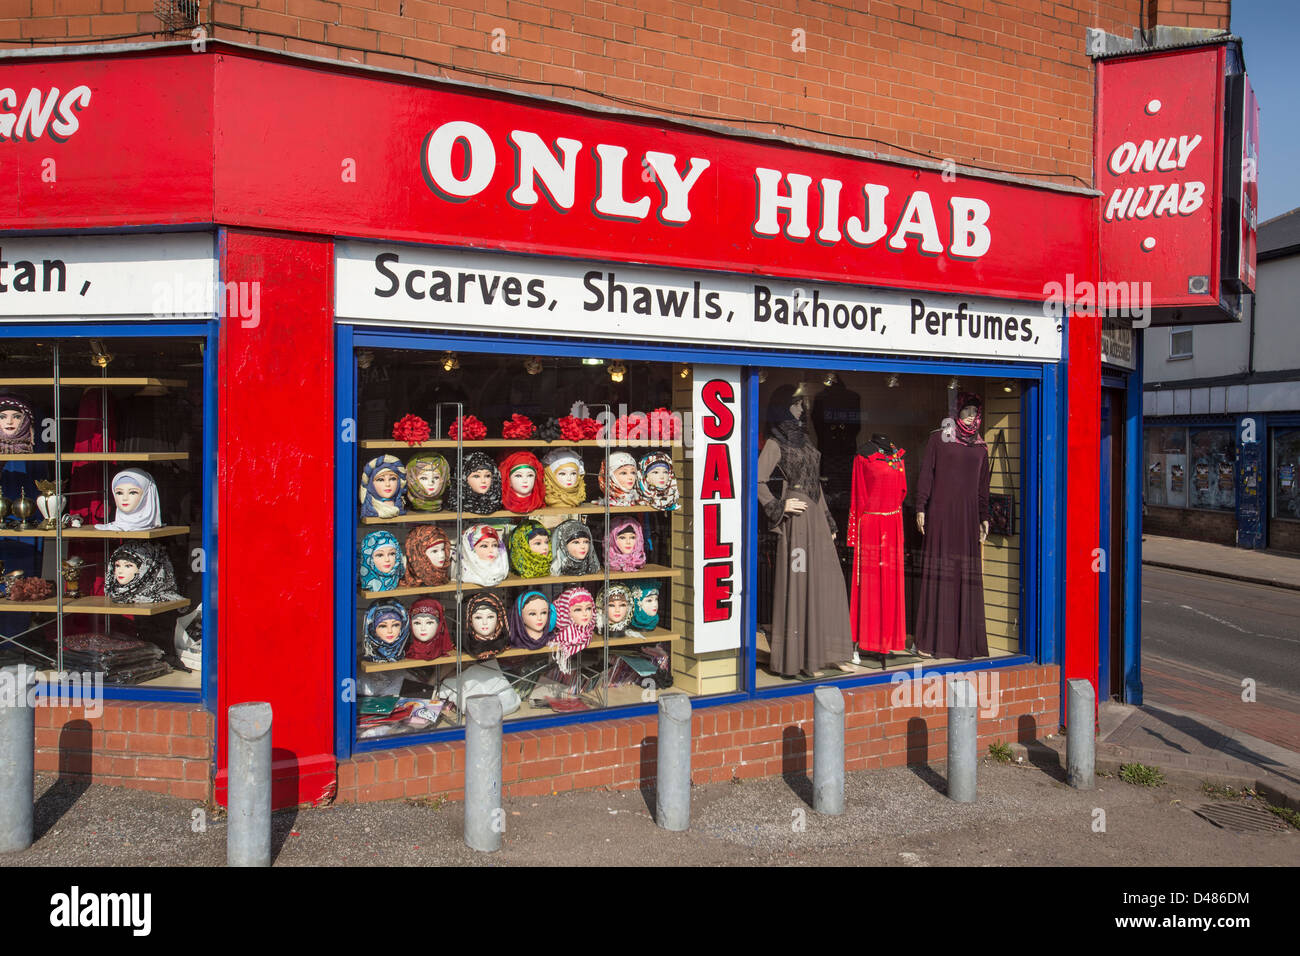 Seulement le hijab, une boutique qui vend des vêtements pour les femmes musulmanes, à Sparkbrook, Birmingham, UK Banque D'Images